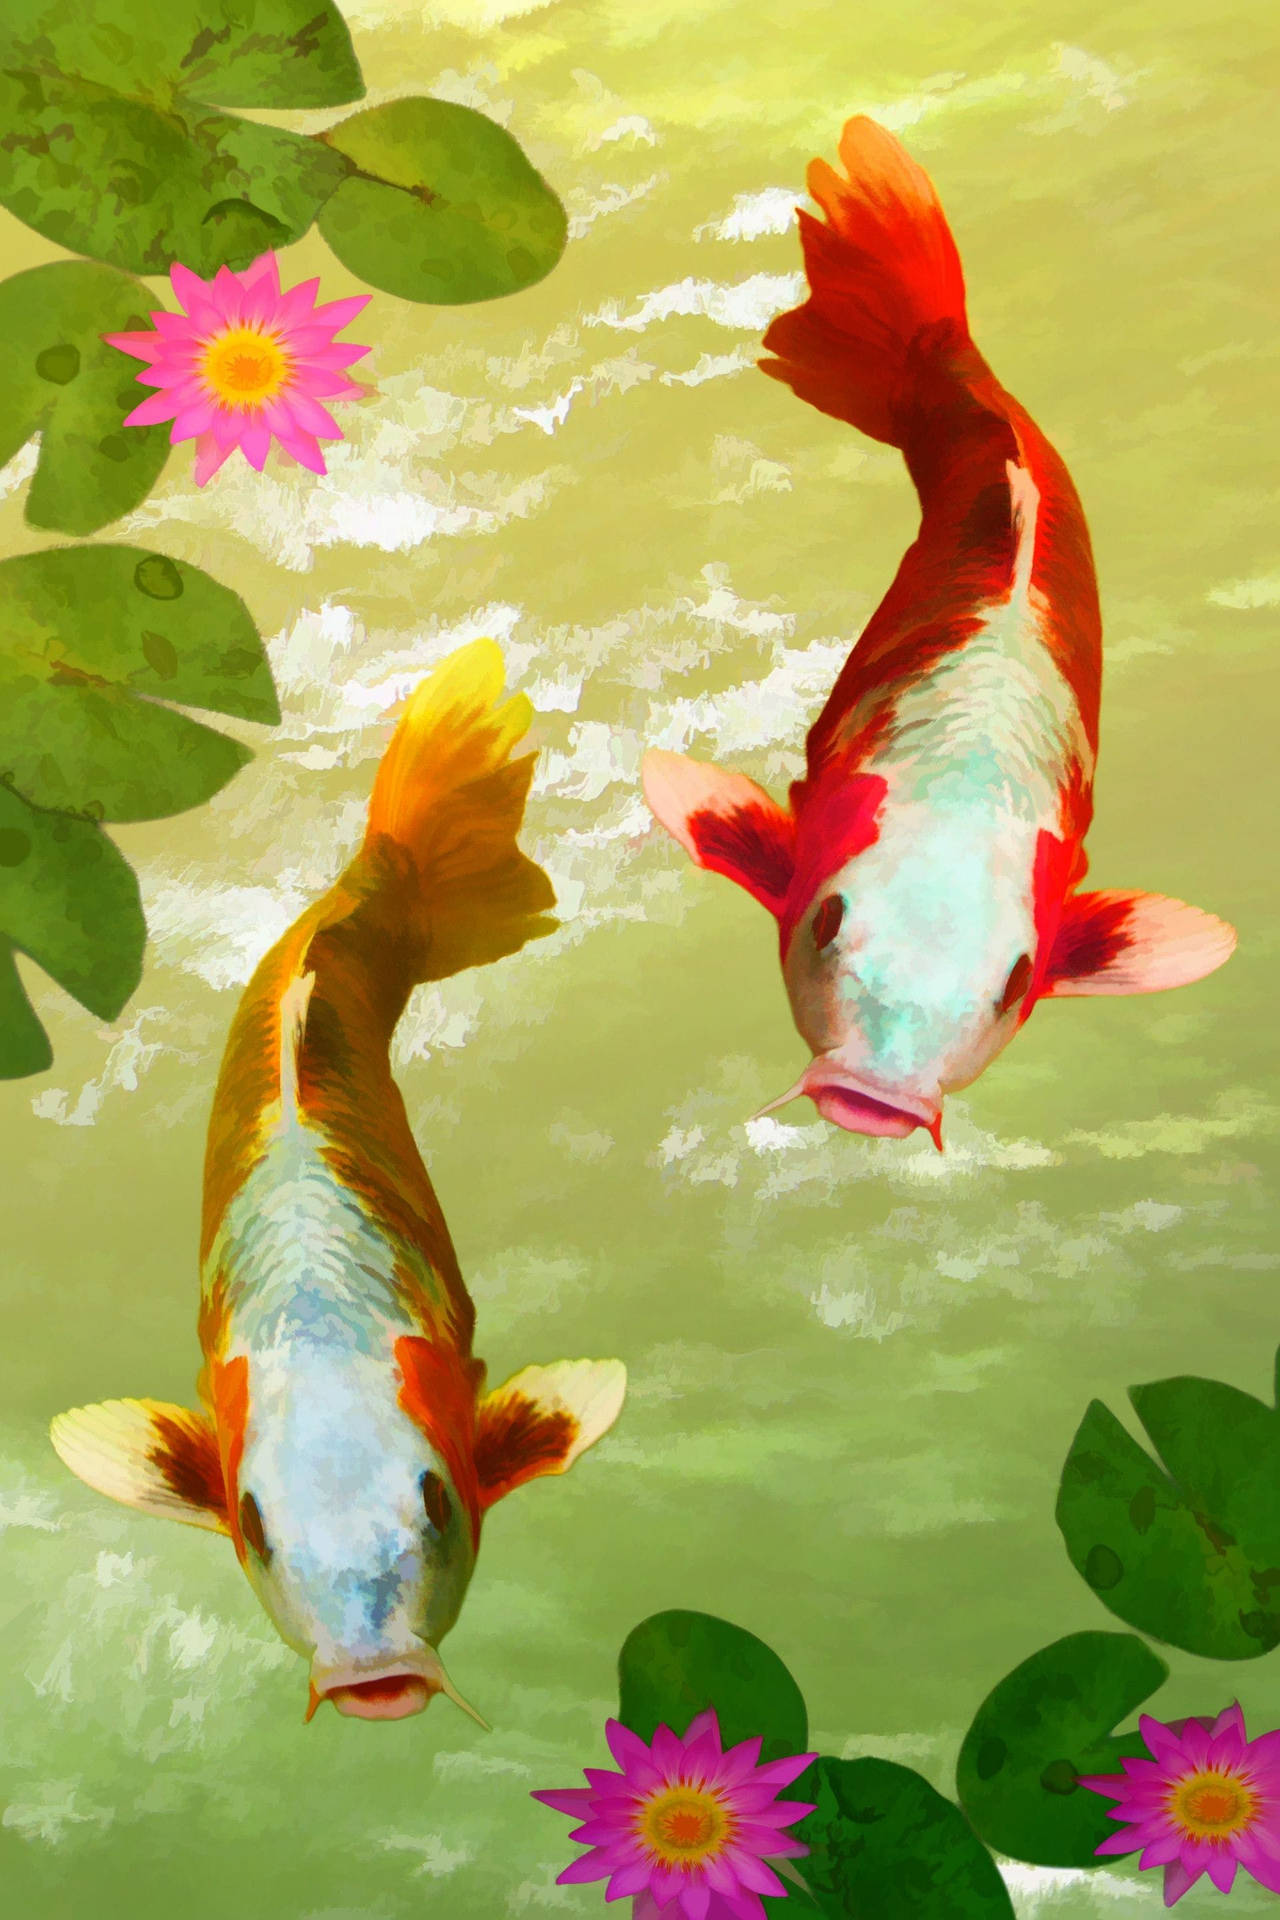 koi fish wallpaper for iphone